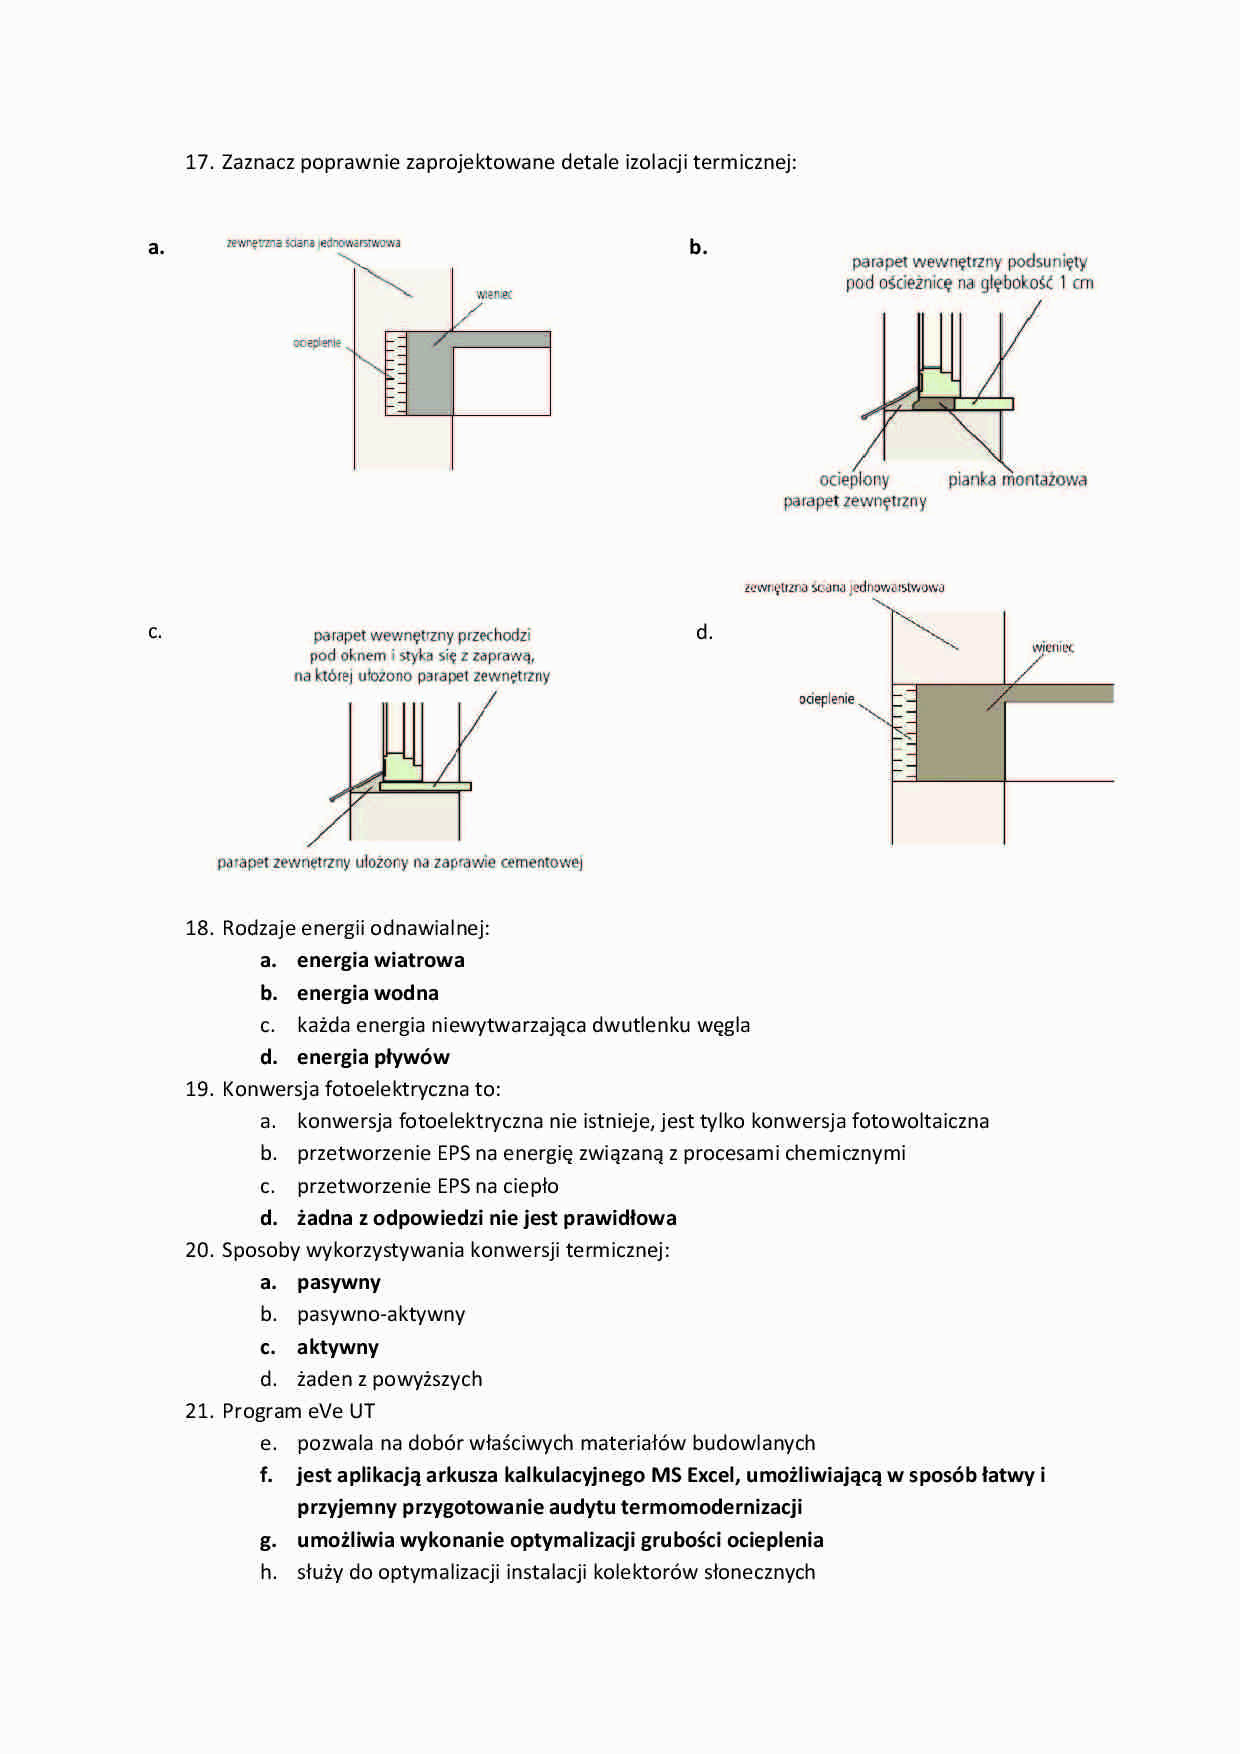 Fizyka budowli - Pytania egzaminacyjne Part 4 - strona 1